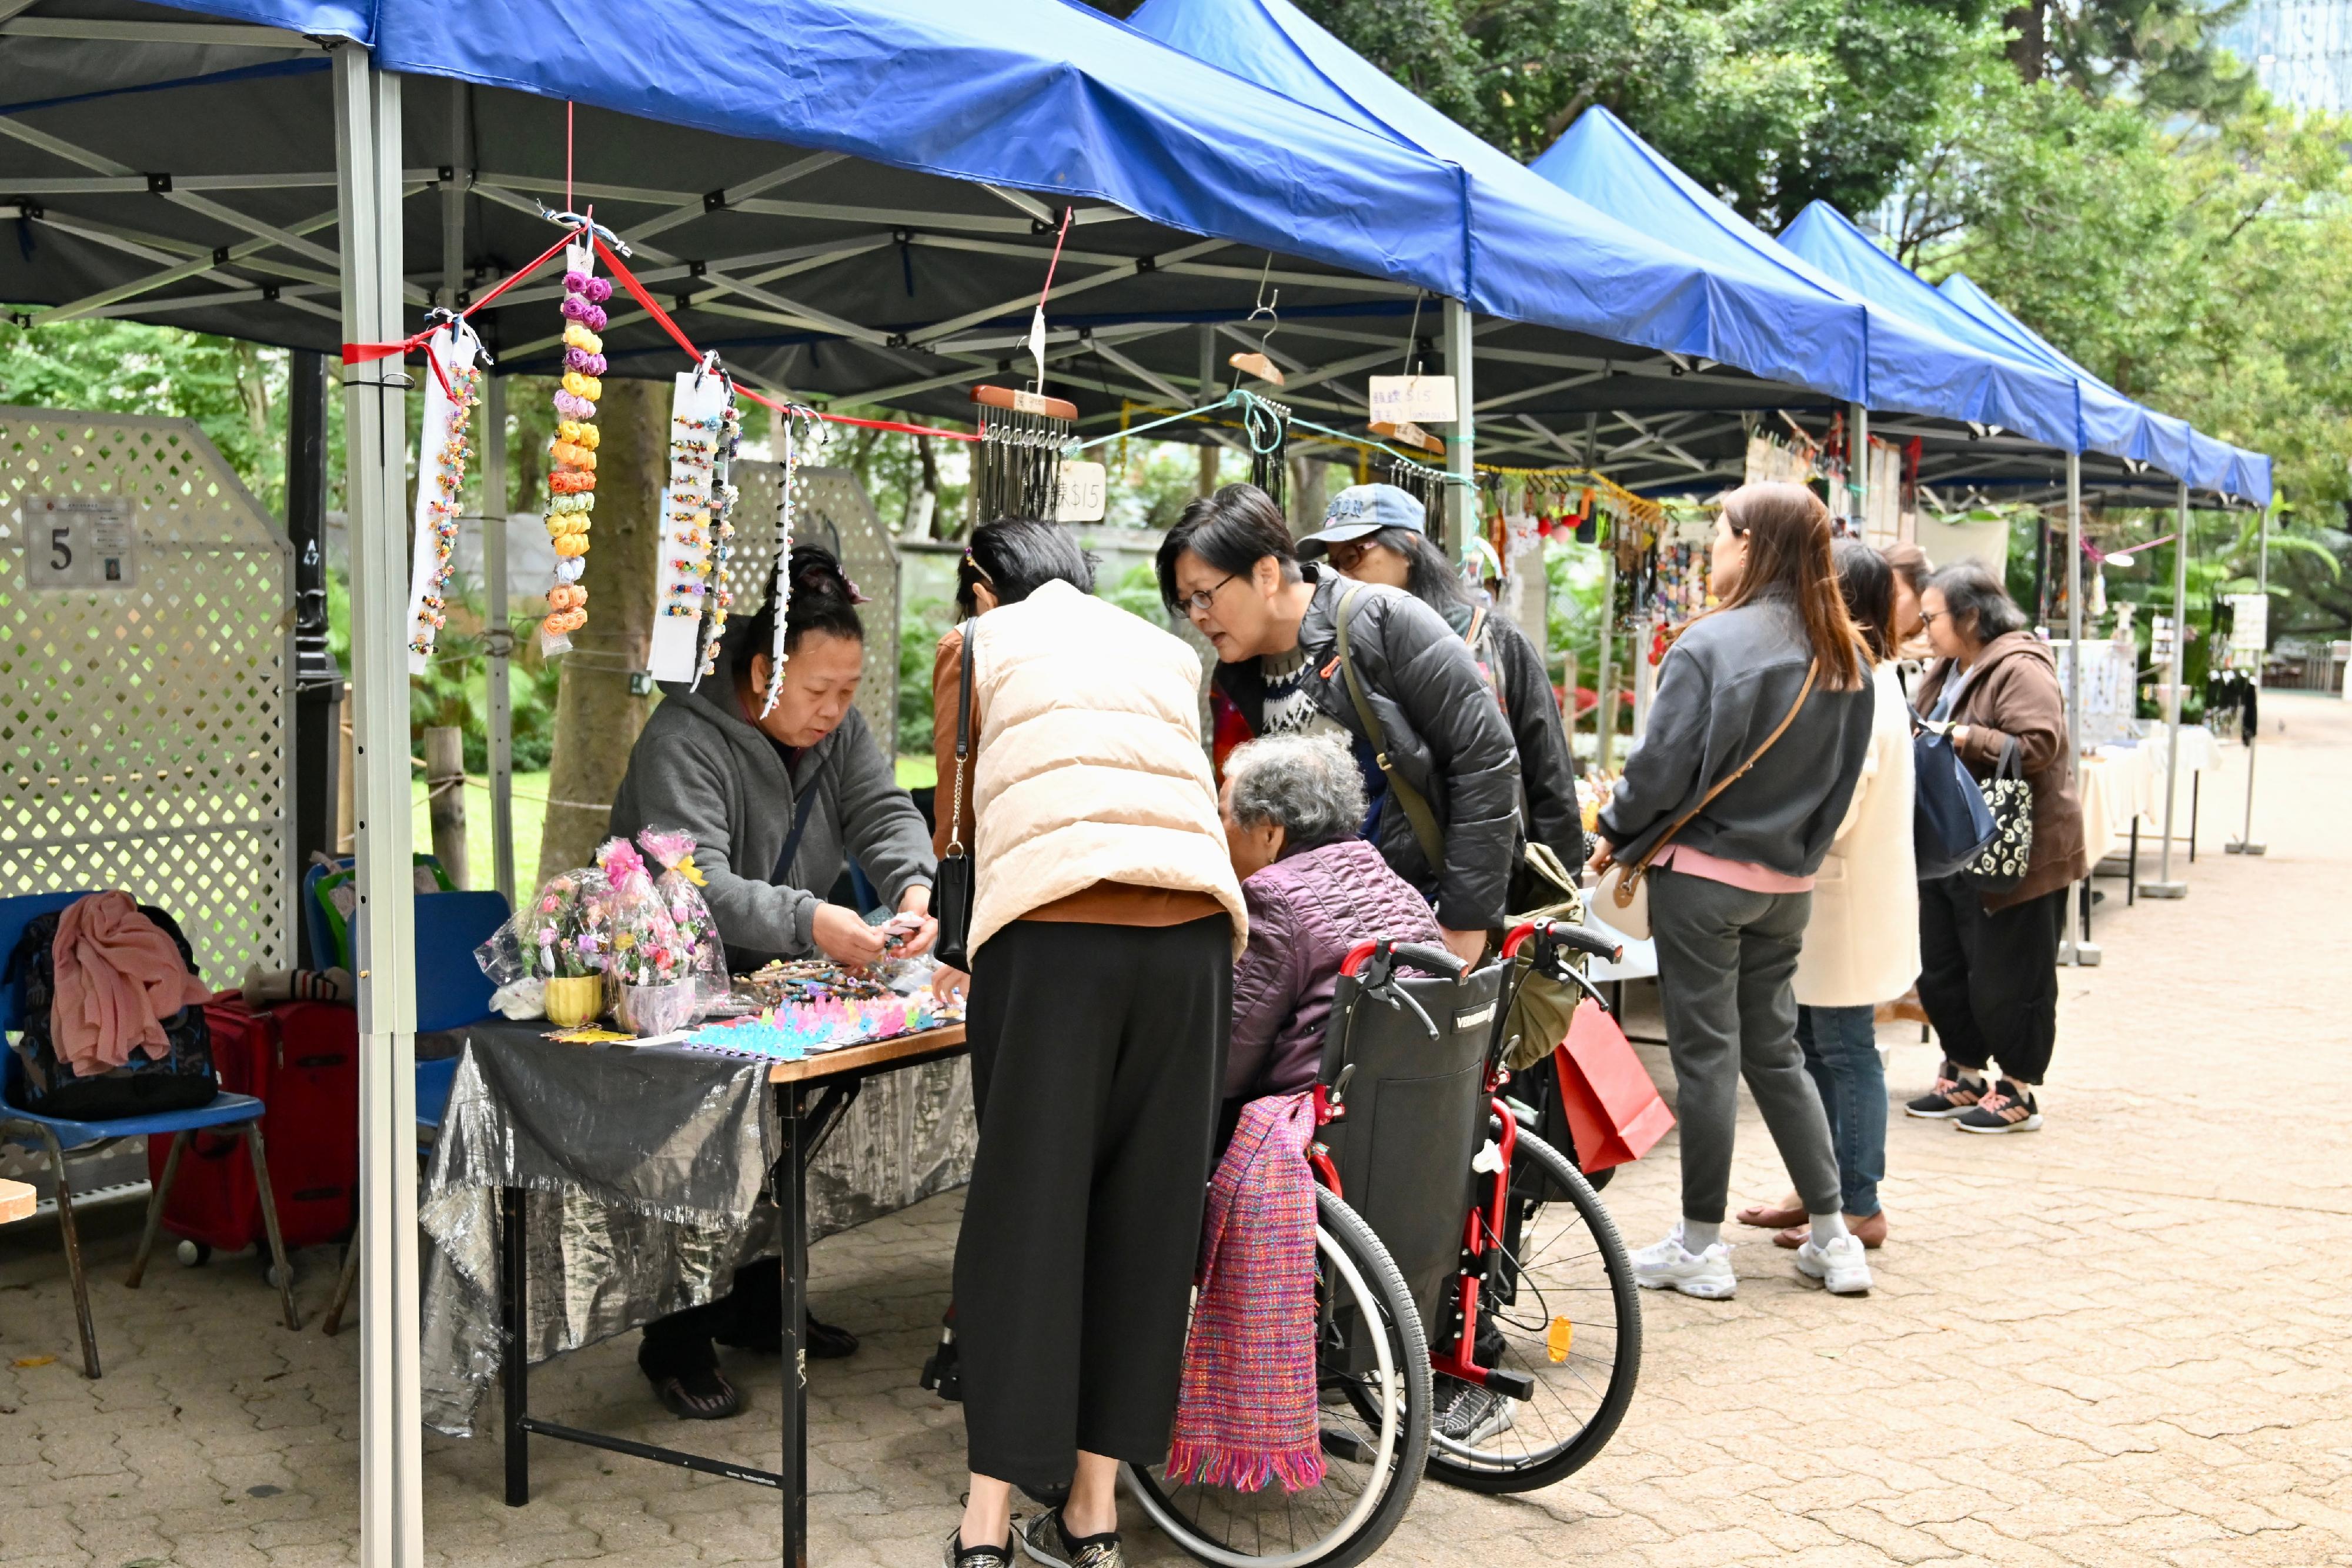 康乐及文化事务署邀请市民参与「艺趣坊」活动。活动于二○二四年一月一日至十二月三十一日期间逢星期六、日及公众假期在香港公园举行。场内设有10个摊位，展出及售卖各种精致的手工艺品，例如布艺和饰物，亦提供绘画和人像素描等艺术服务。